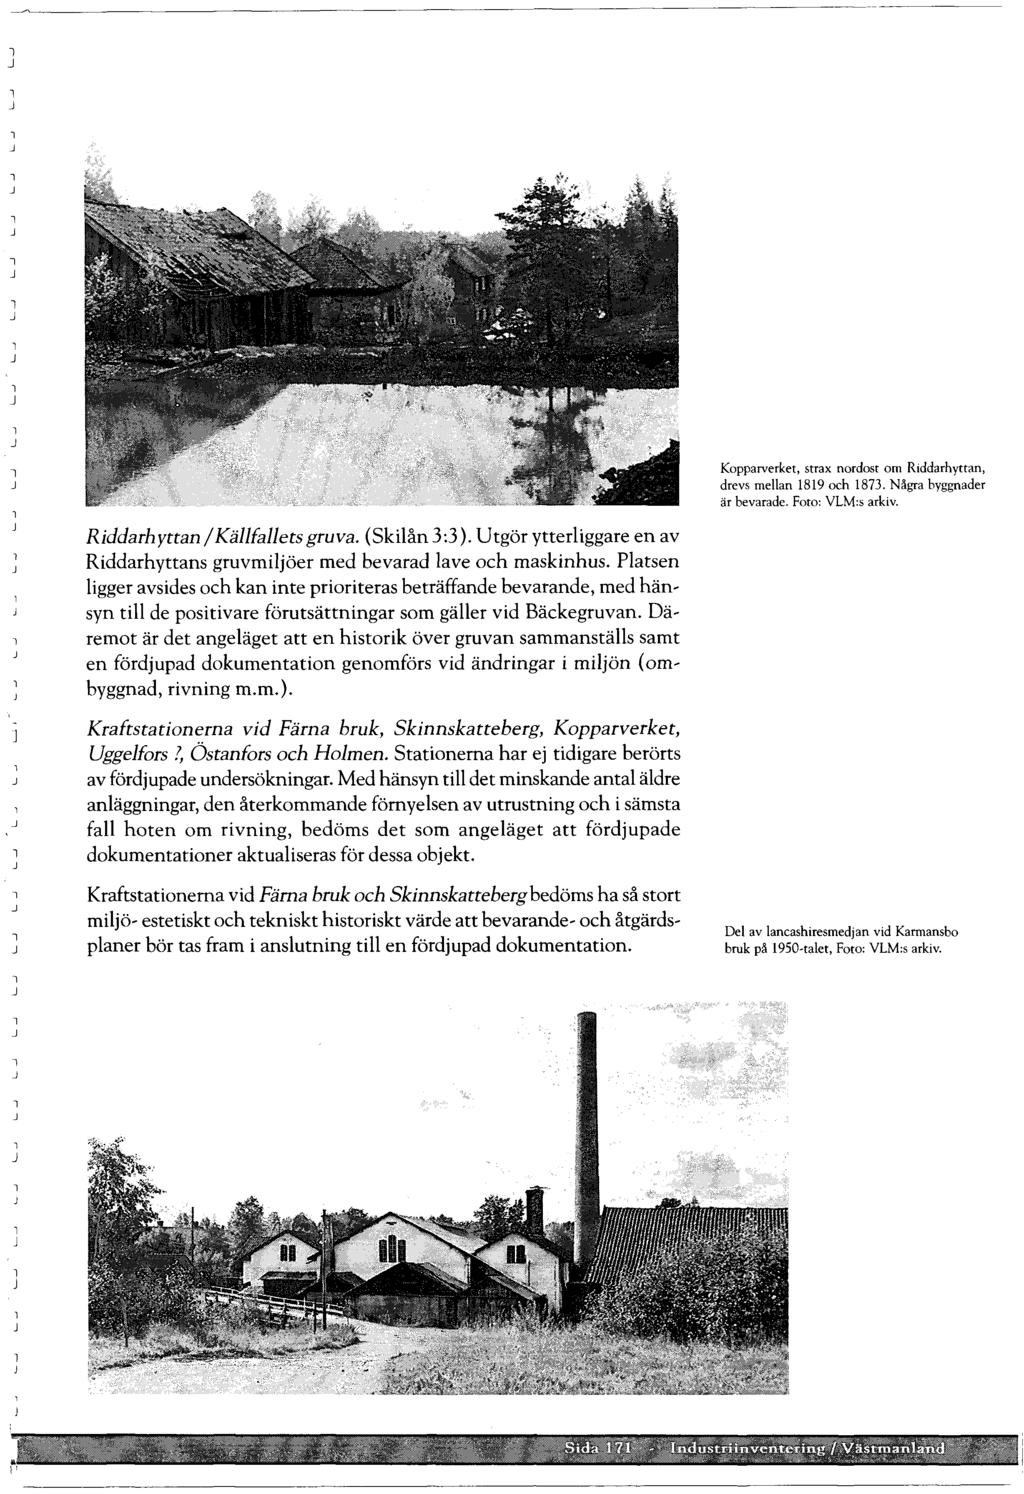 Kopparverket, strax nordost om Riddarhyttan, drevs mean 1819 och 1873. Några byggnader är bevarade. Foto: VLM:s arkiv. Riddarhyttan/Käfaets gruva. (Skiån 3:3).